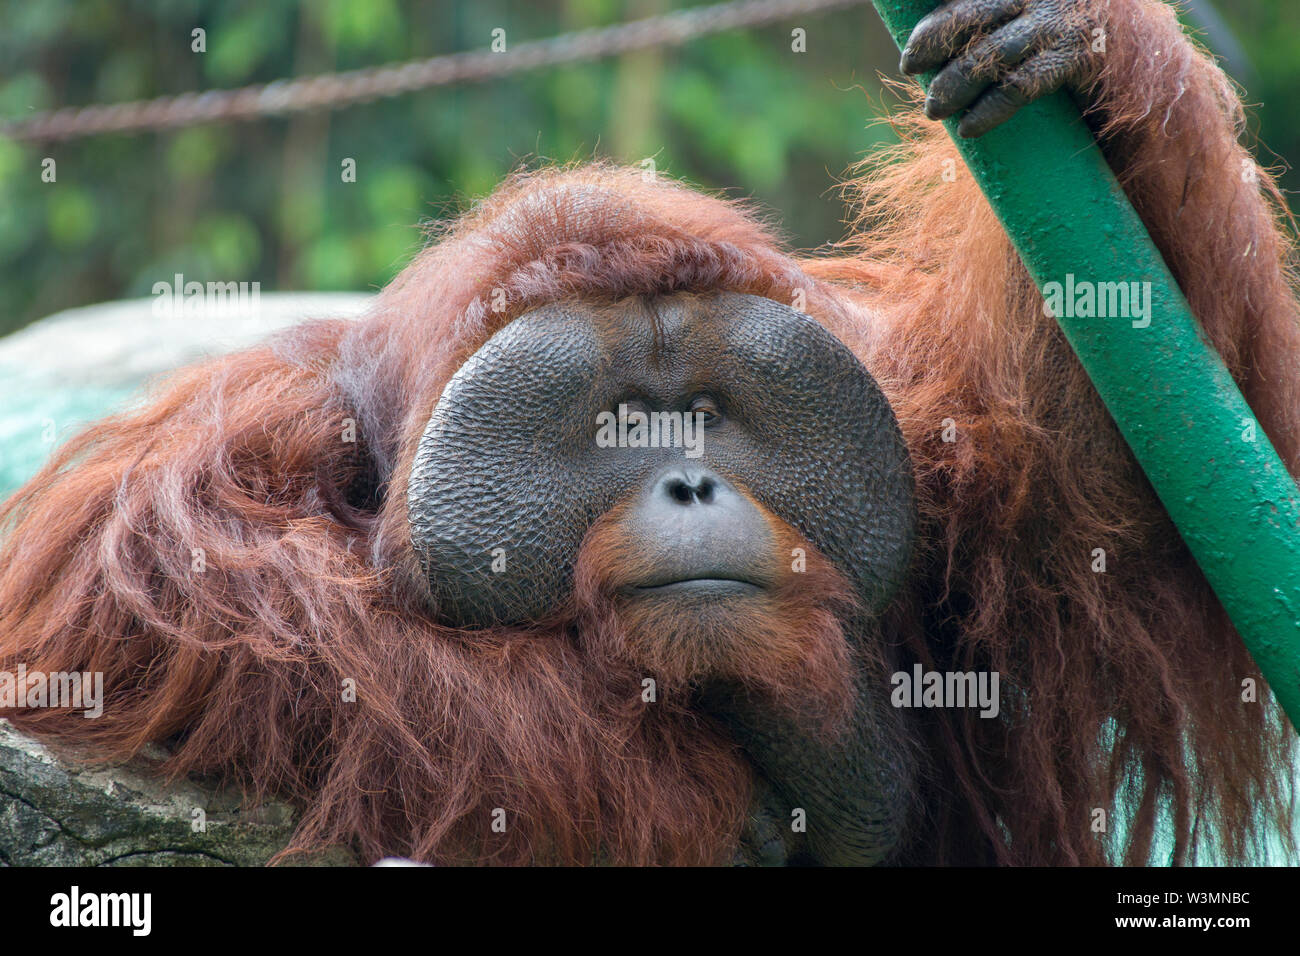 Eine durchdachte Bornesischen Orang-utan closeup Bild. Es ist eine Art von Orang-utan native auf der Insel Borneo. Stockfoto